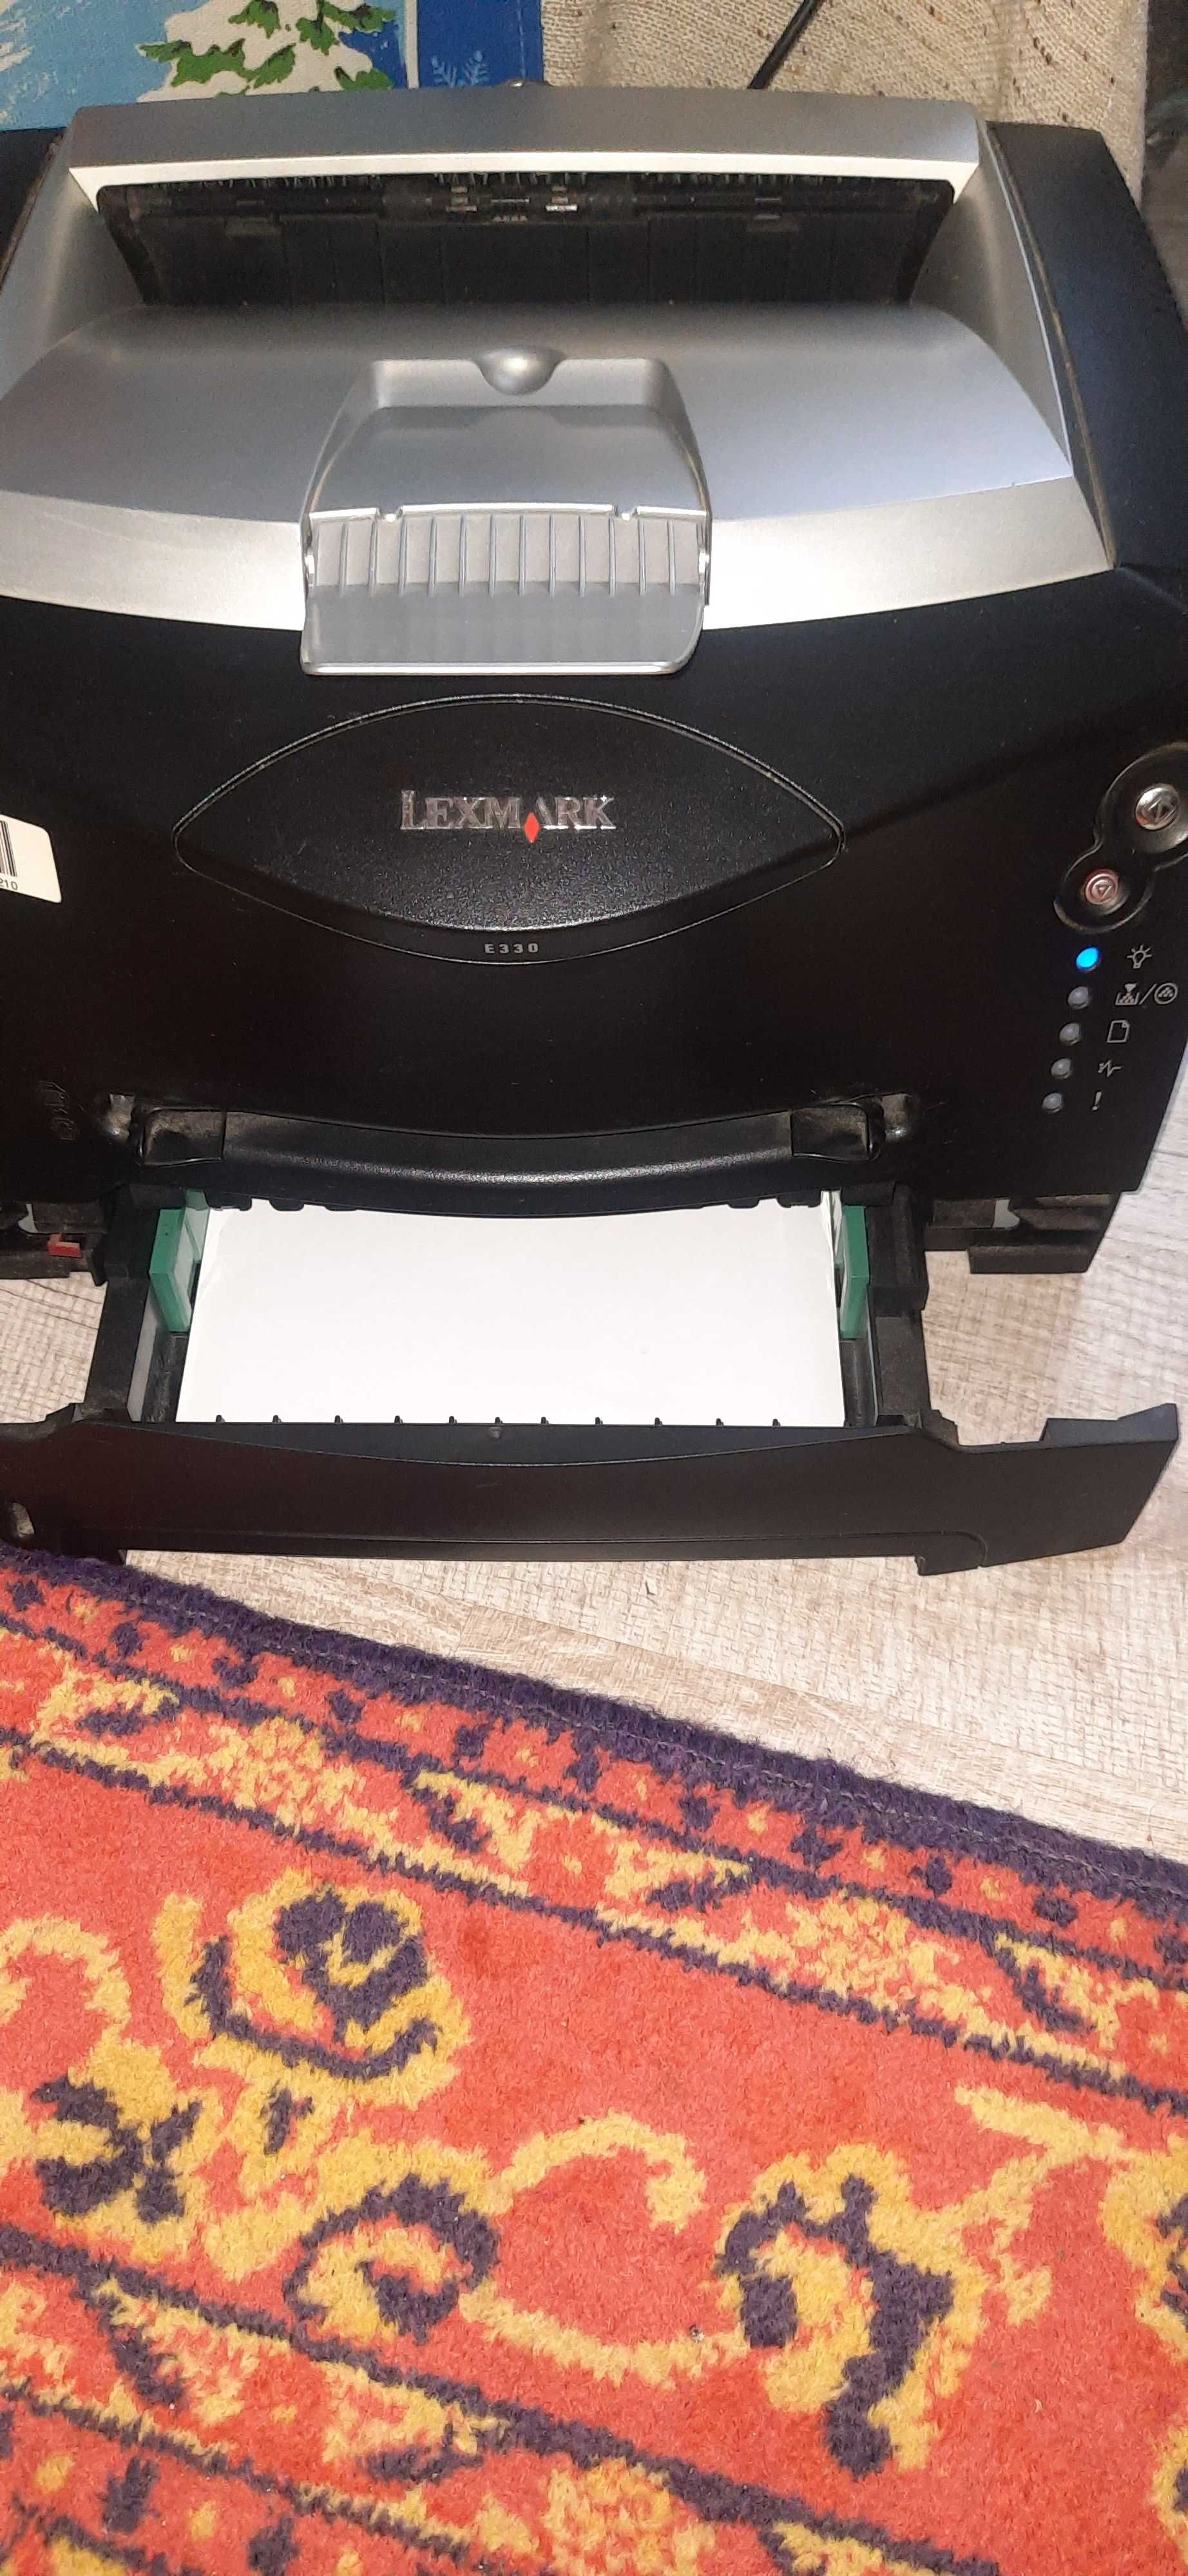 Лазерный ч.б. принтер Lexmark E330.